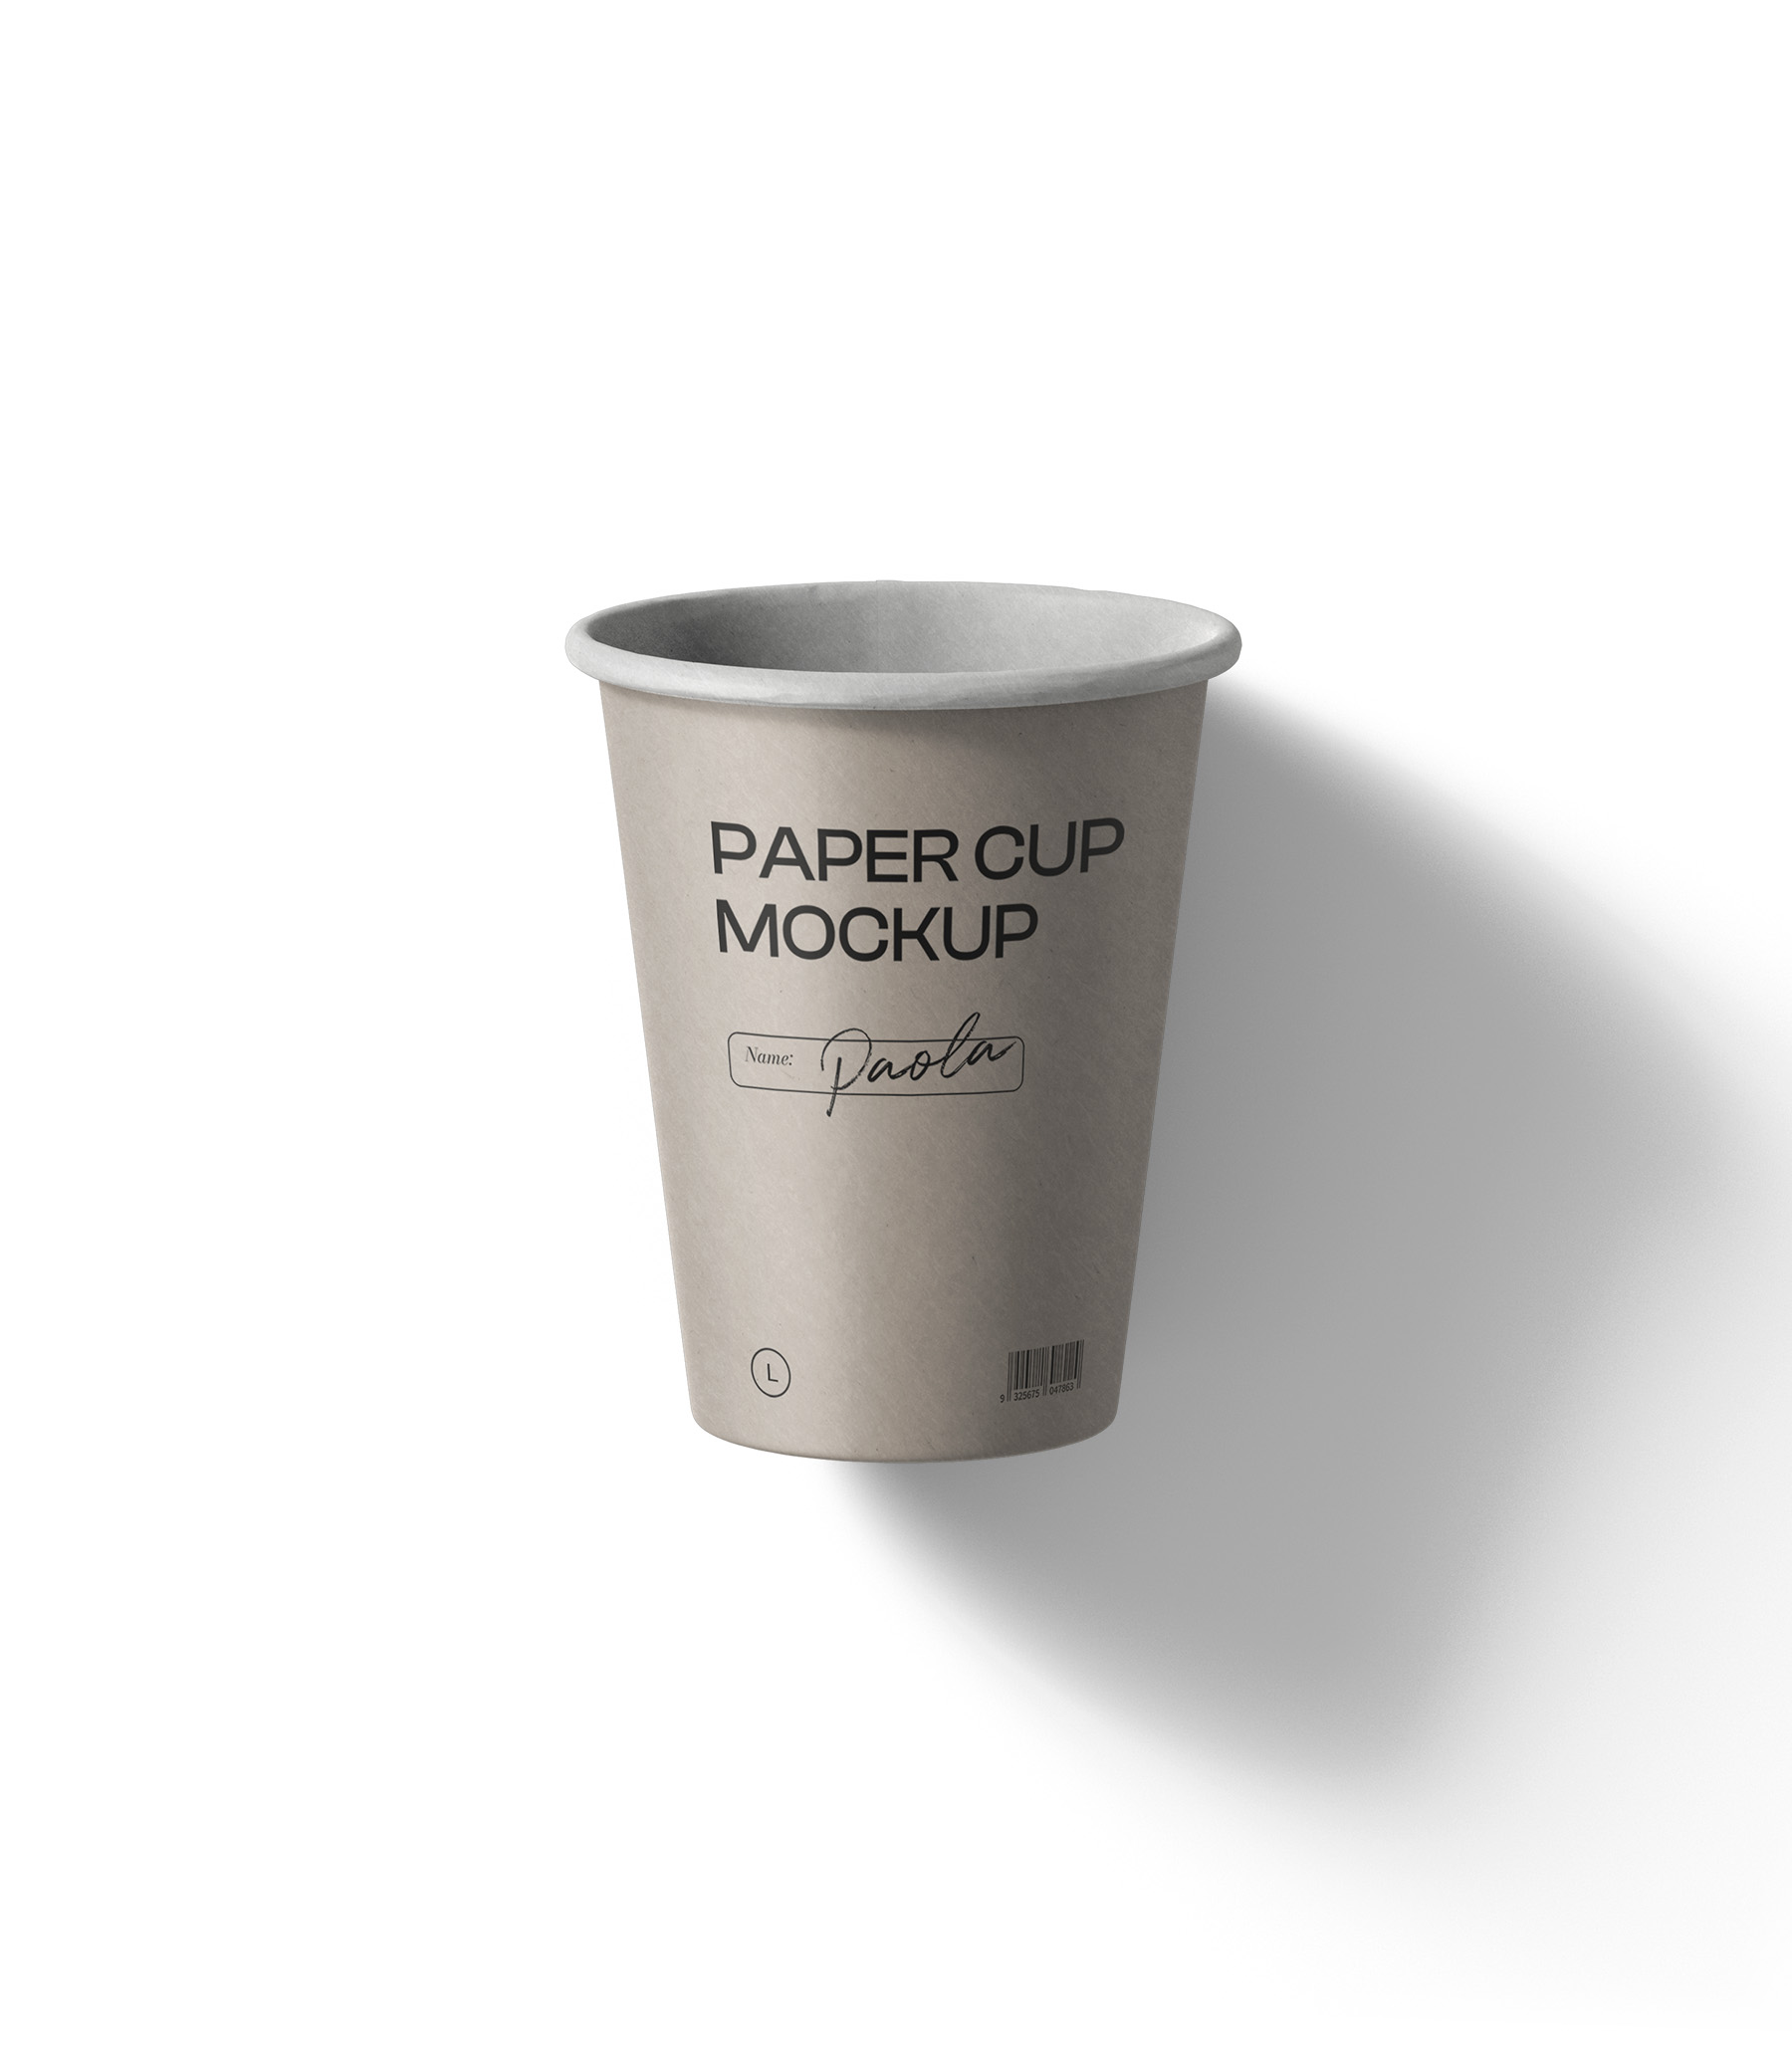 https://creatoom.com/wp-content/uploads/2022/01/paper-cup-mockup-v5-top-view.jpg